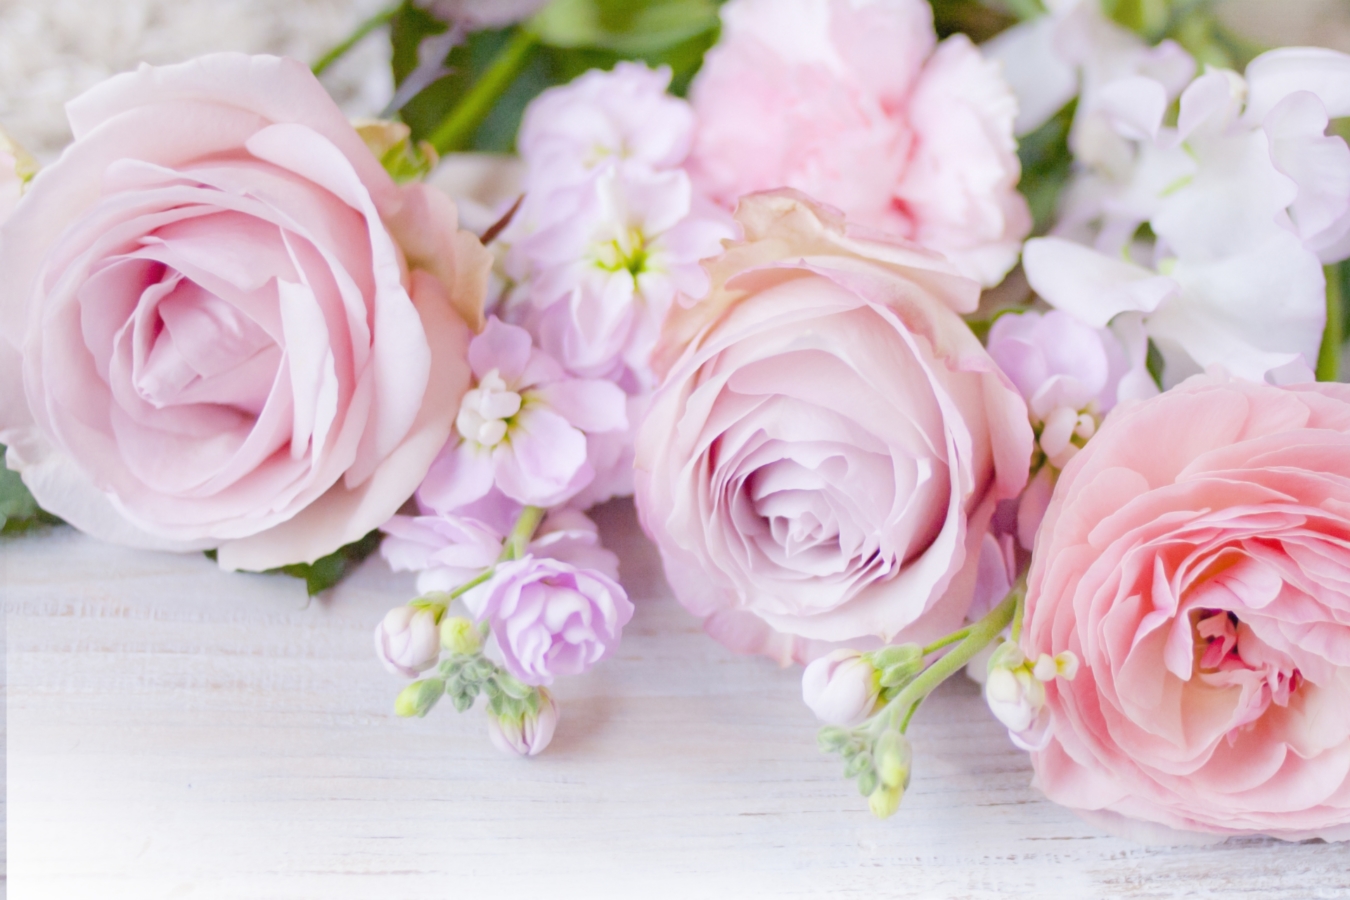 ラナンキュラスの花言葉 色 種類別の意味や由来 花束に人気の理由とは Hanasaku